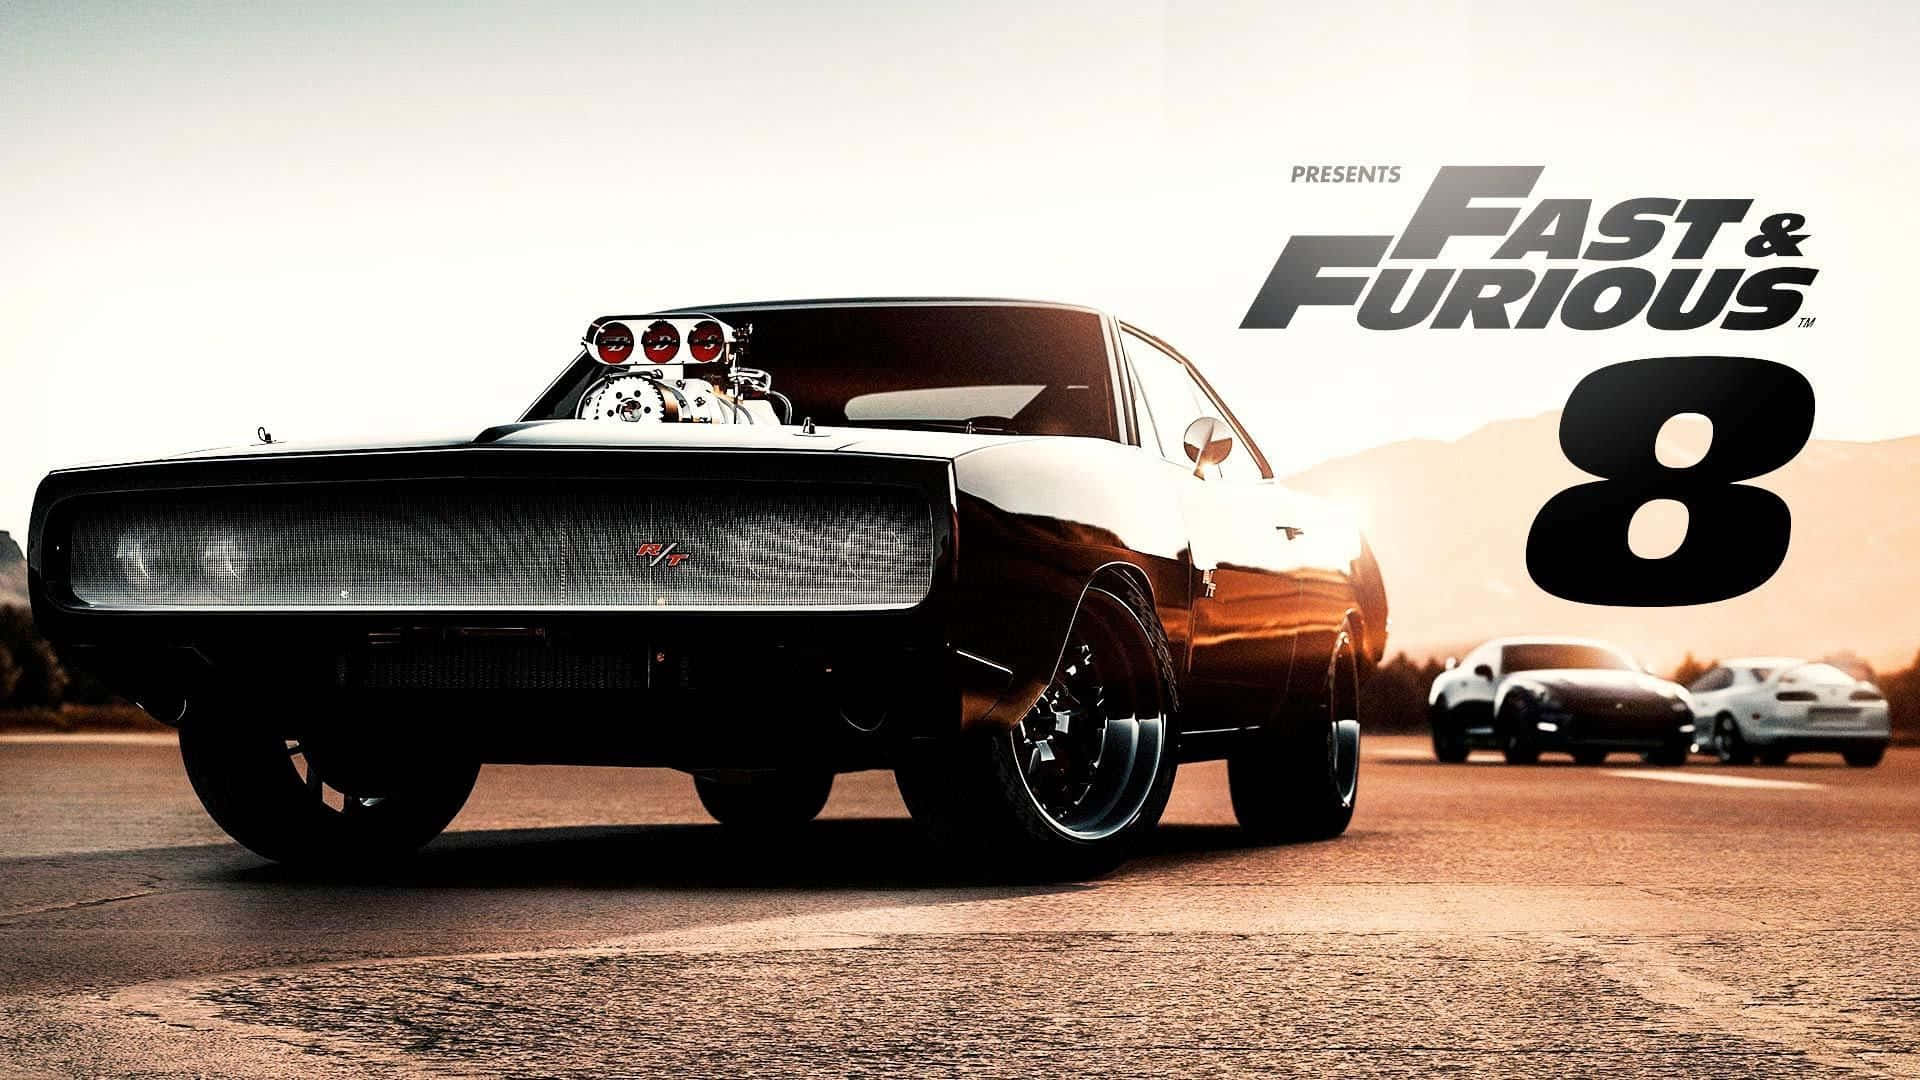 Vin Diesel and Paul Walker in Fast&Furious